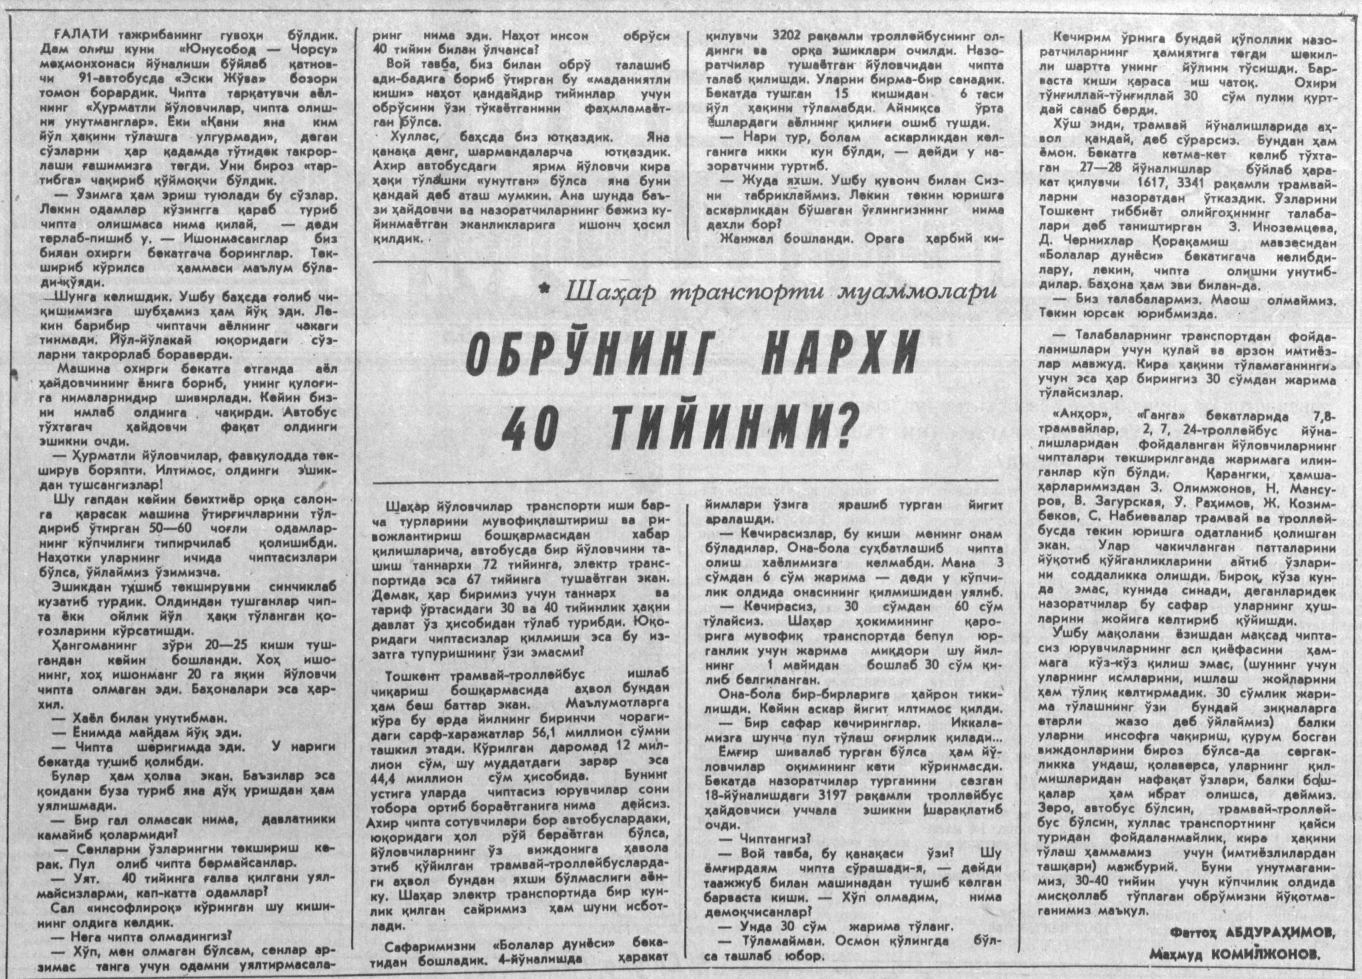 “Toshkent oqshomi” gazetasining 1992-yil 26-may sonidan lavha